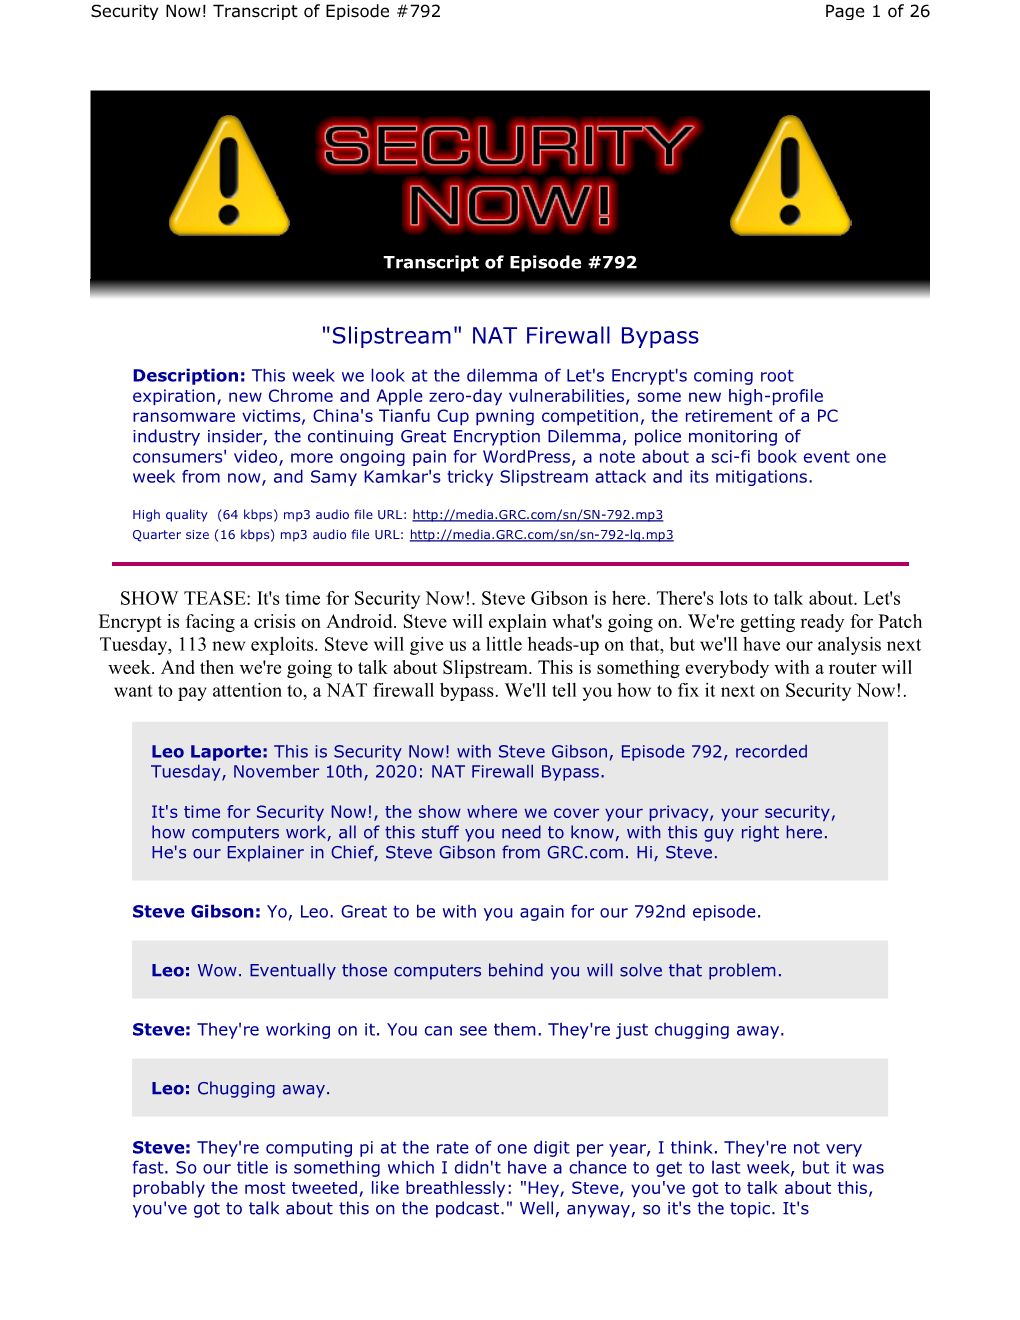 Slipstream" NAT Firewall Bypass